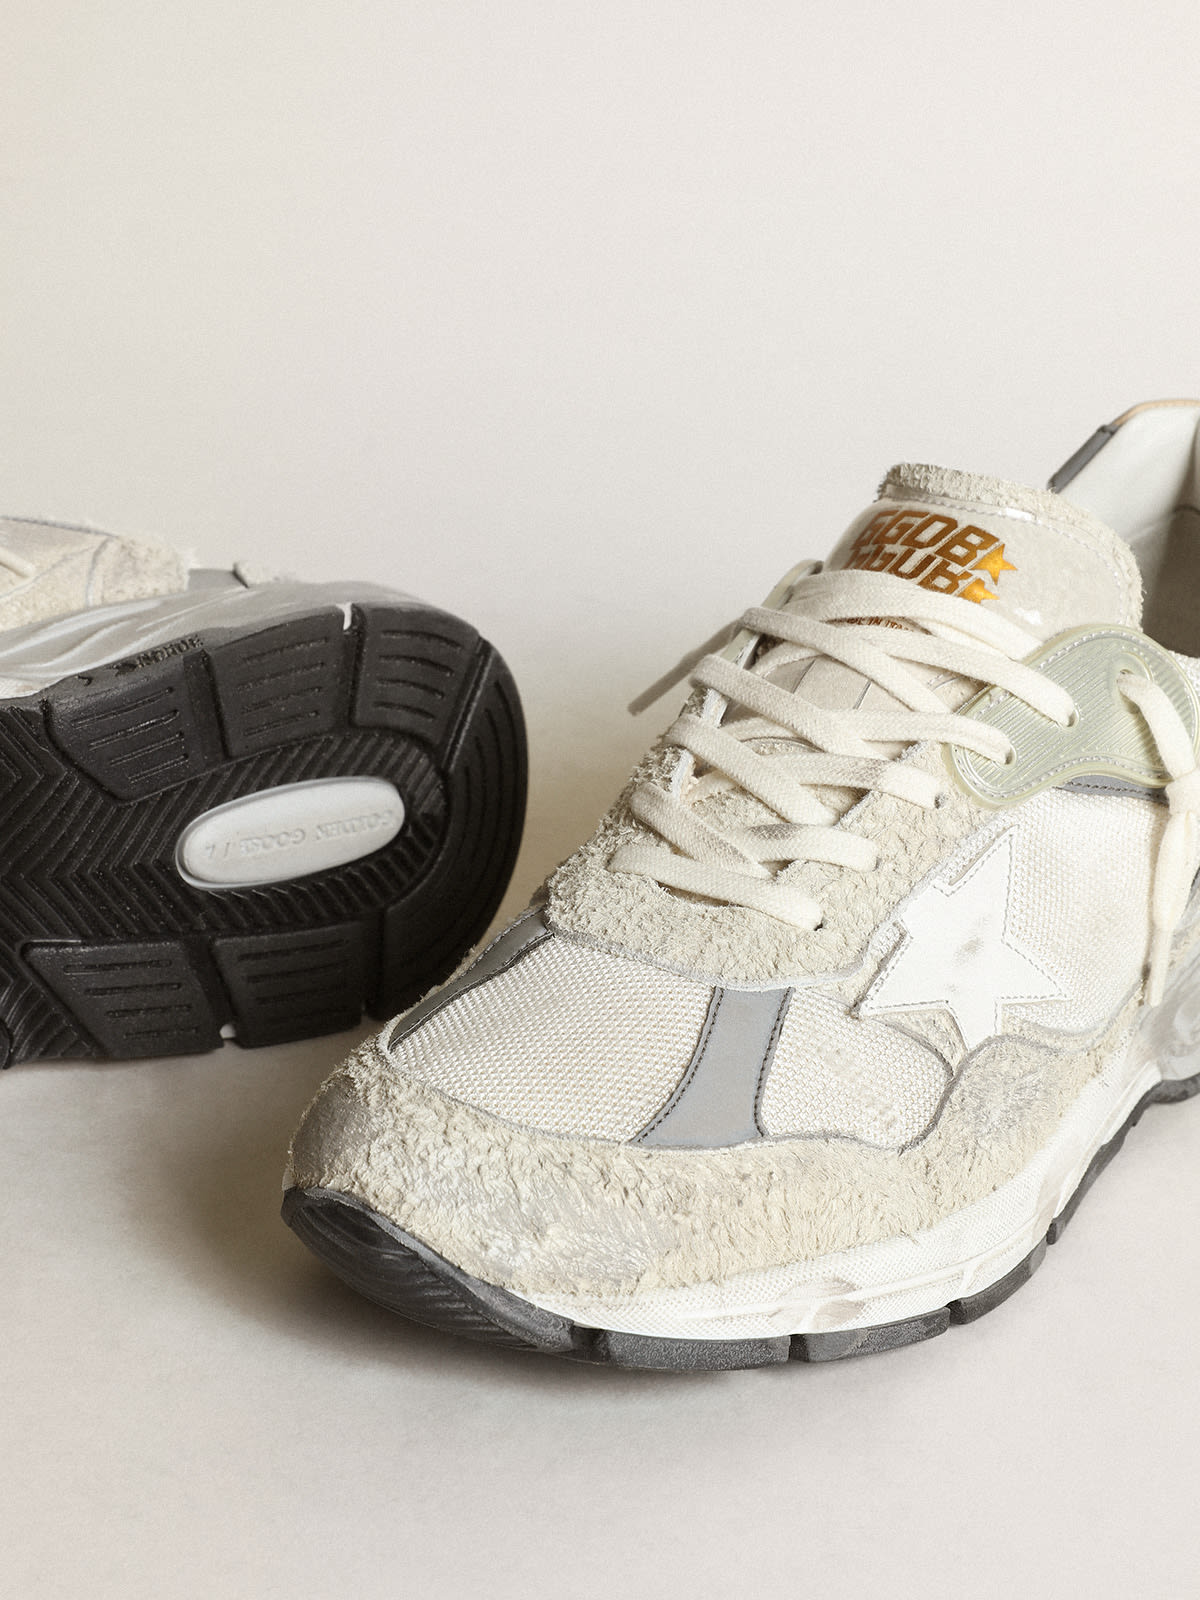 Golden Goose - Sneakers Dad-Star aus weißem Rauleder mit weißem Lederstern in 